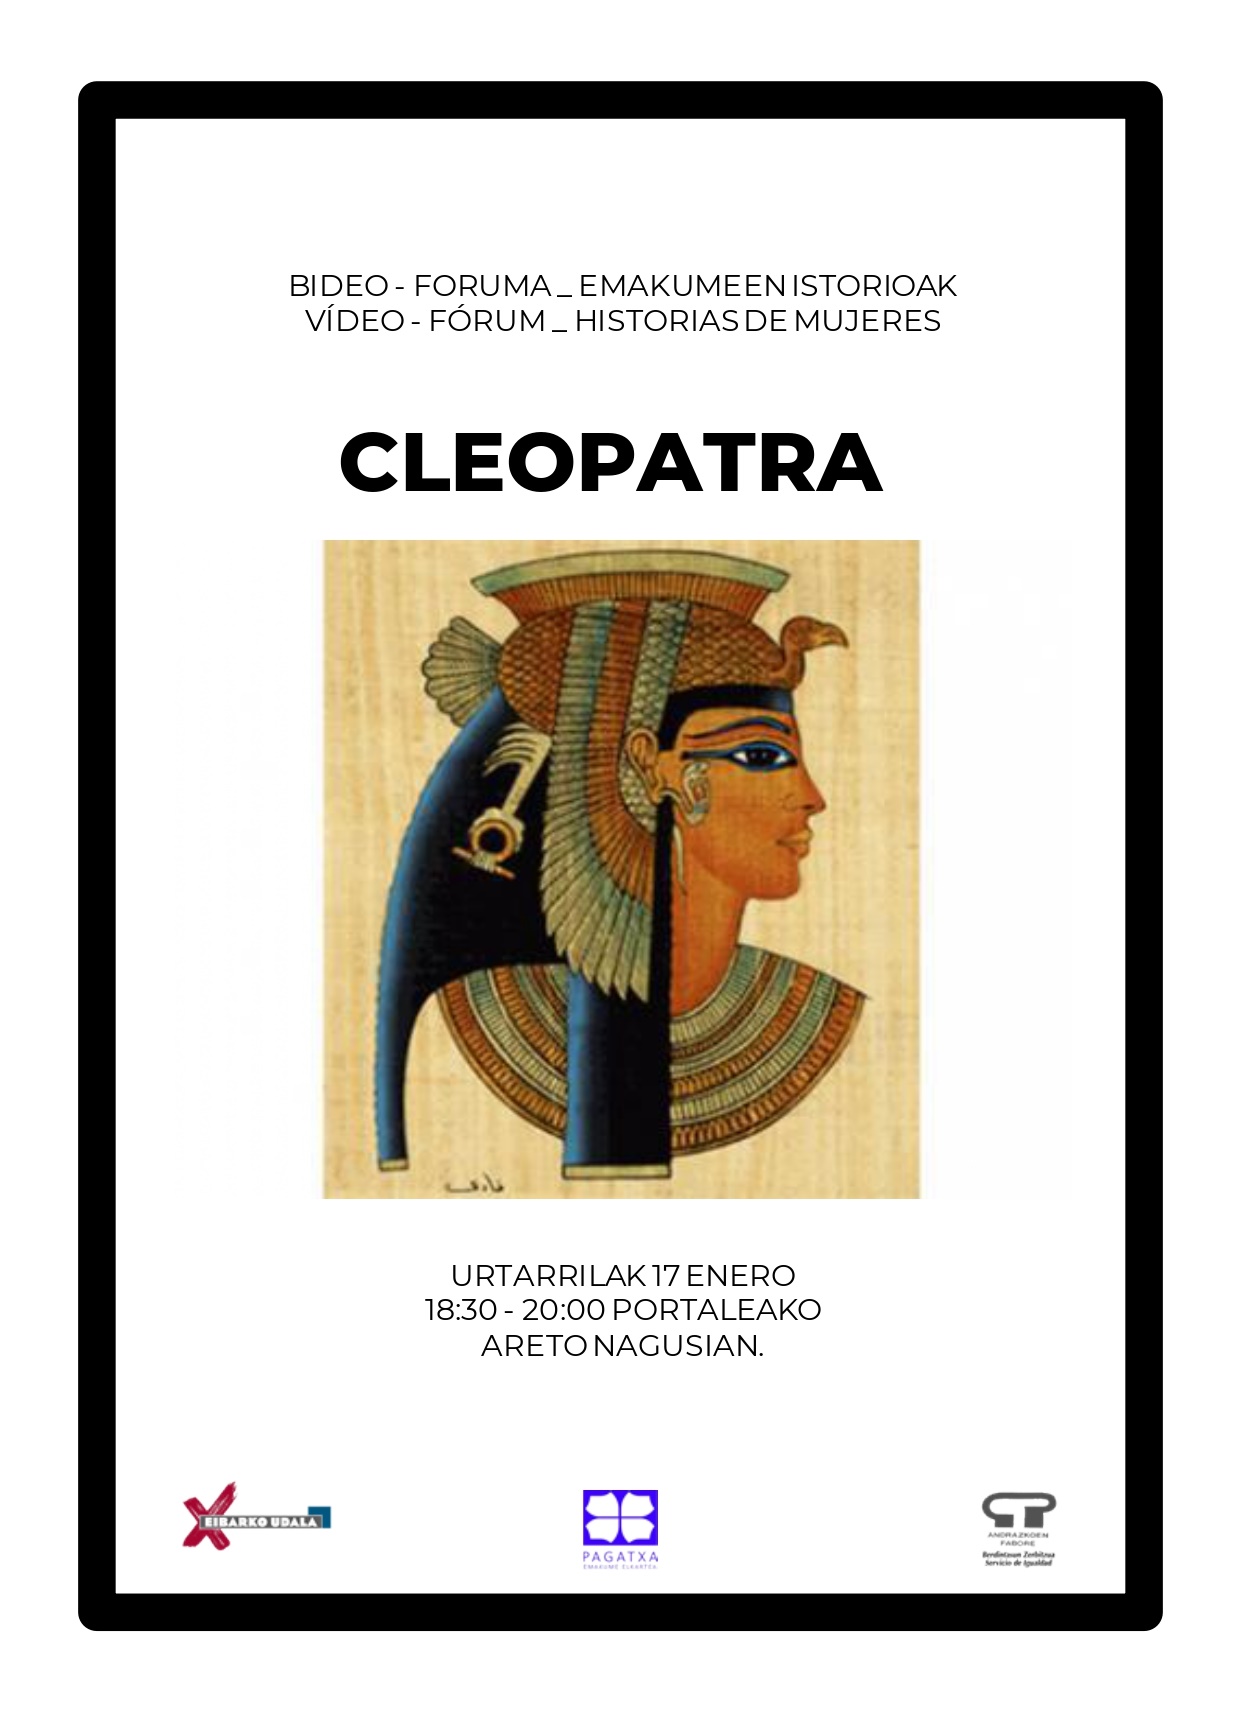 Emakumeen istorioen bideo-foruma: Kleopatra